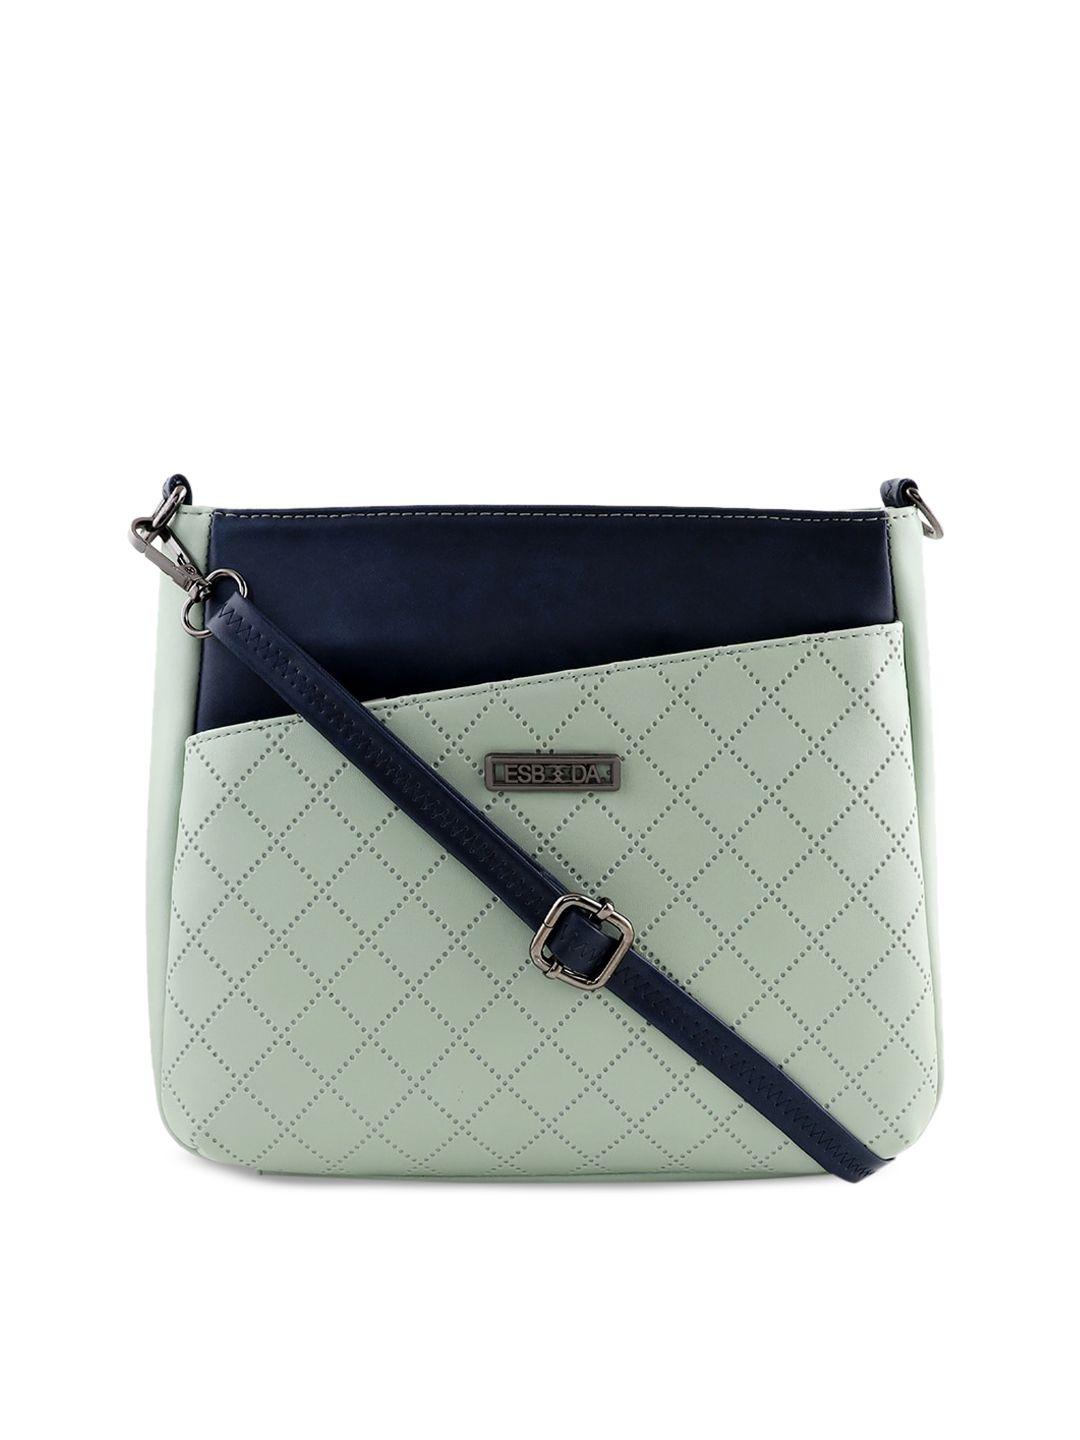 esbeda green & navy blue colourblocked sling bag